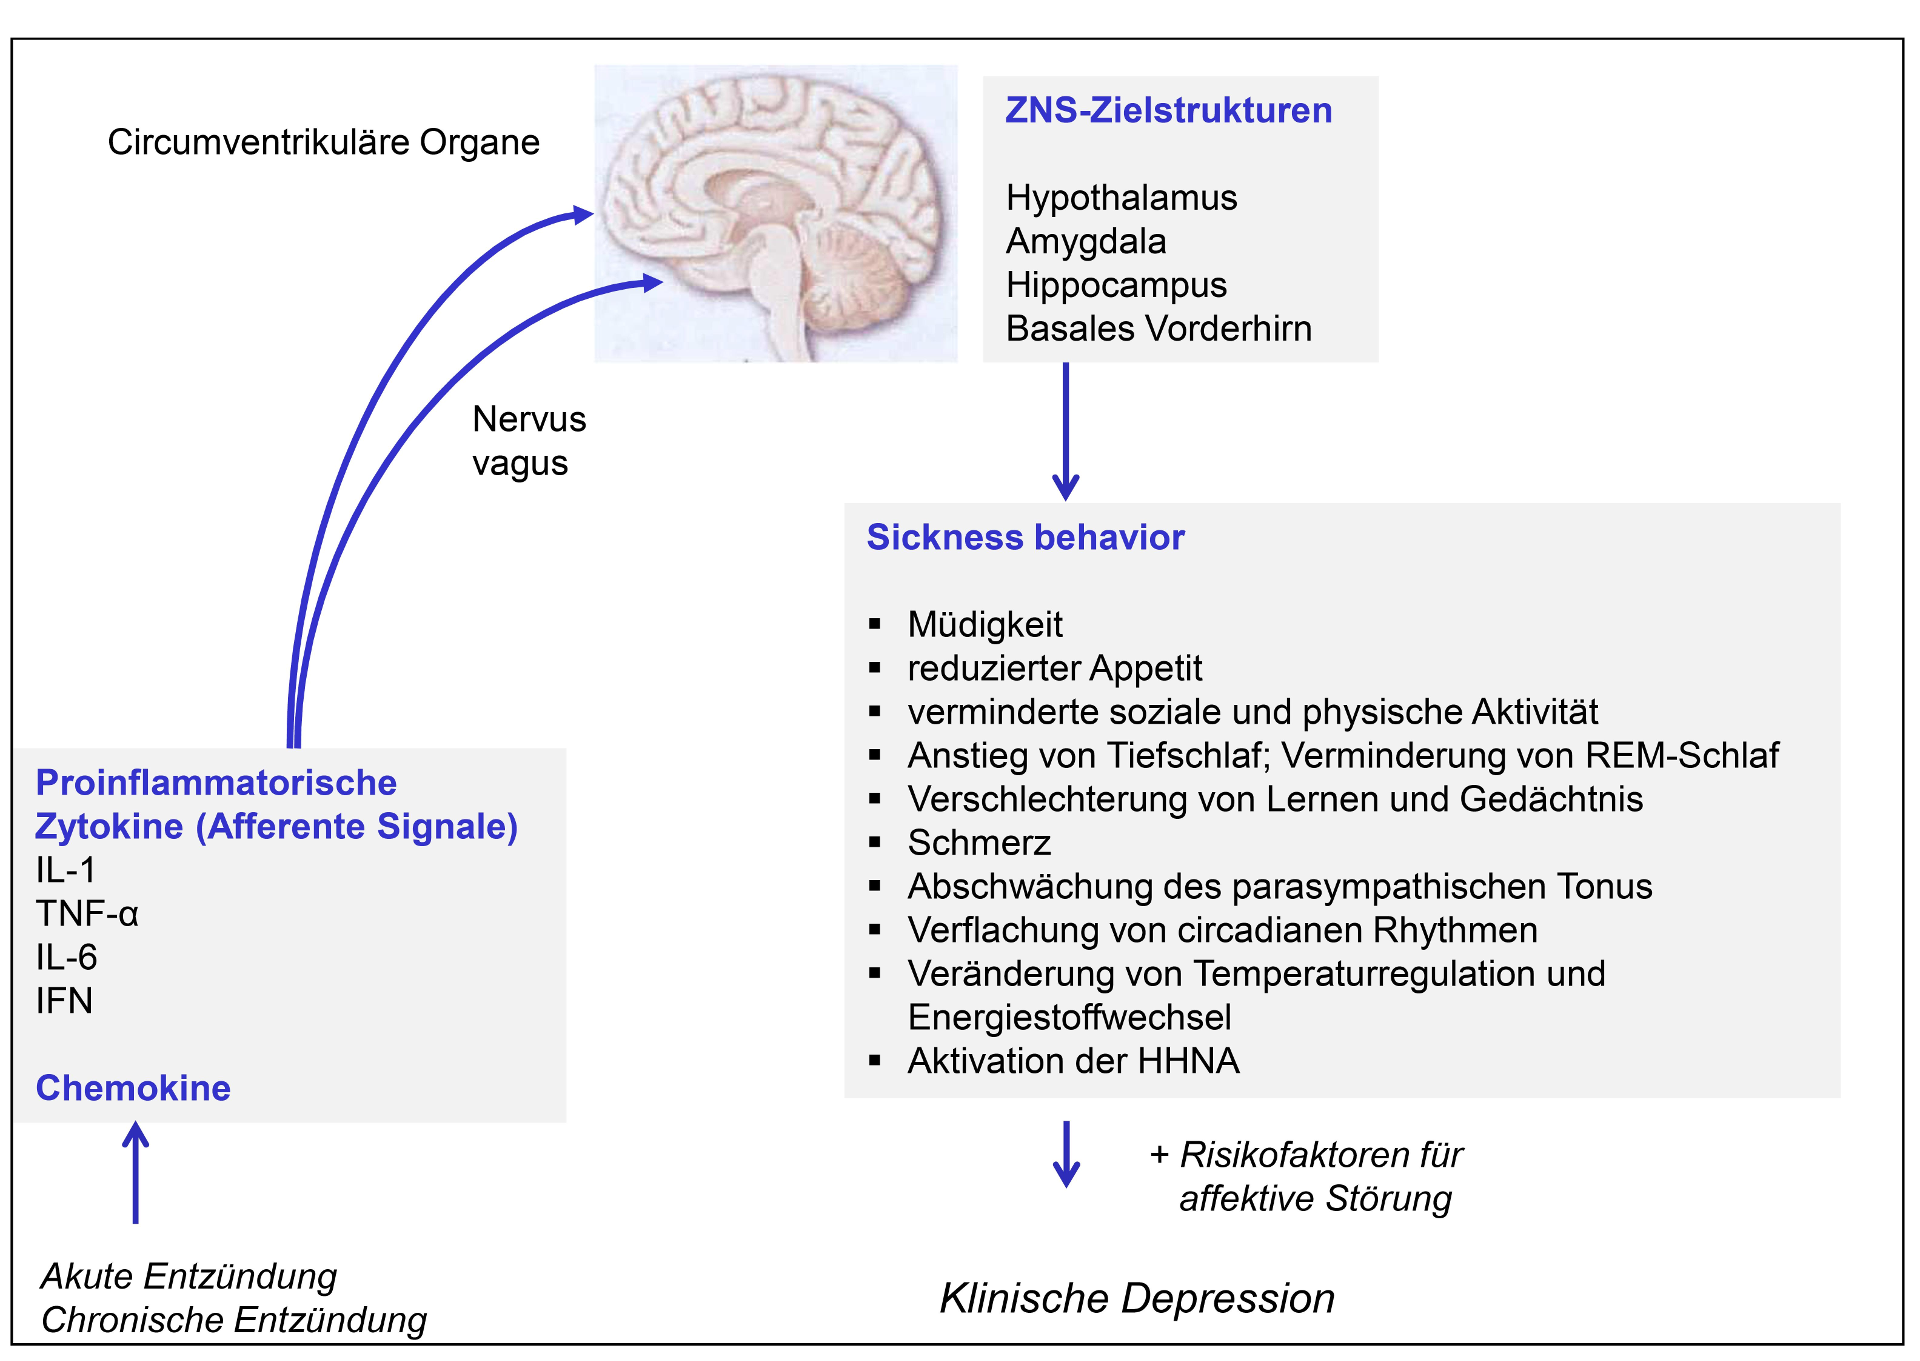 Abbildung 5: Proinflammatorische Zytokine als afferente Signale für das ZNS, involvierte Strukturen, Symptome des „Sickness behavior“ und Bedeutung für die Manifestation einer klinischen Depression bei vulnerablen Individuen